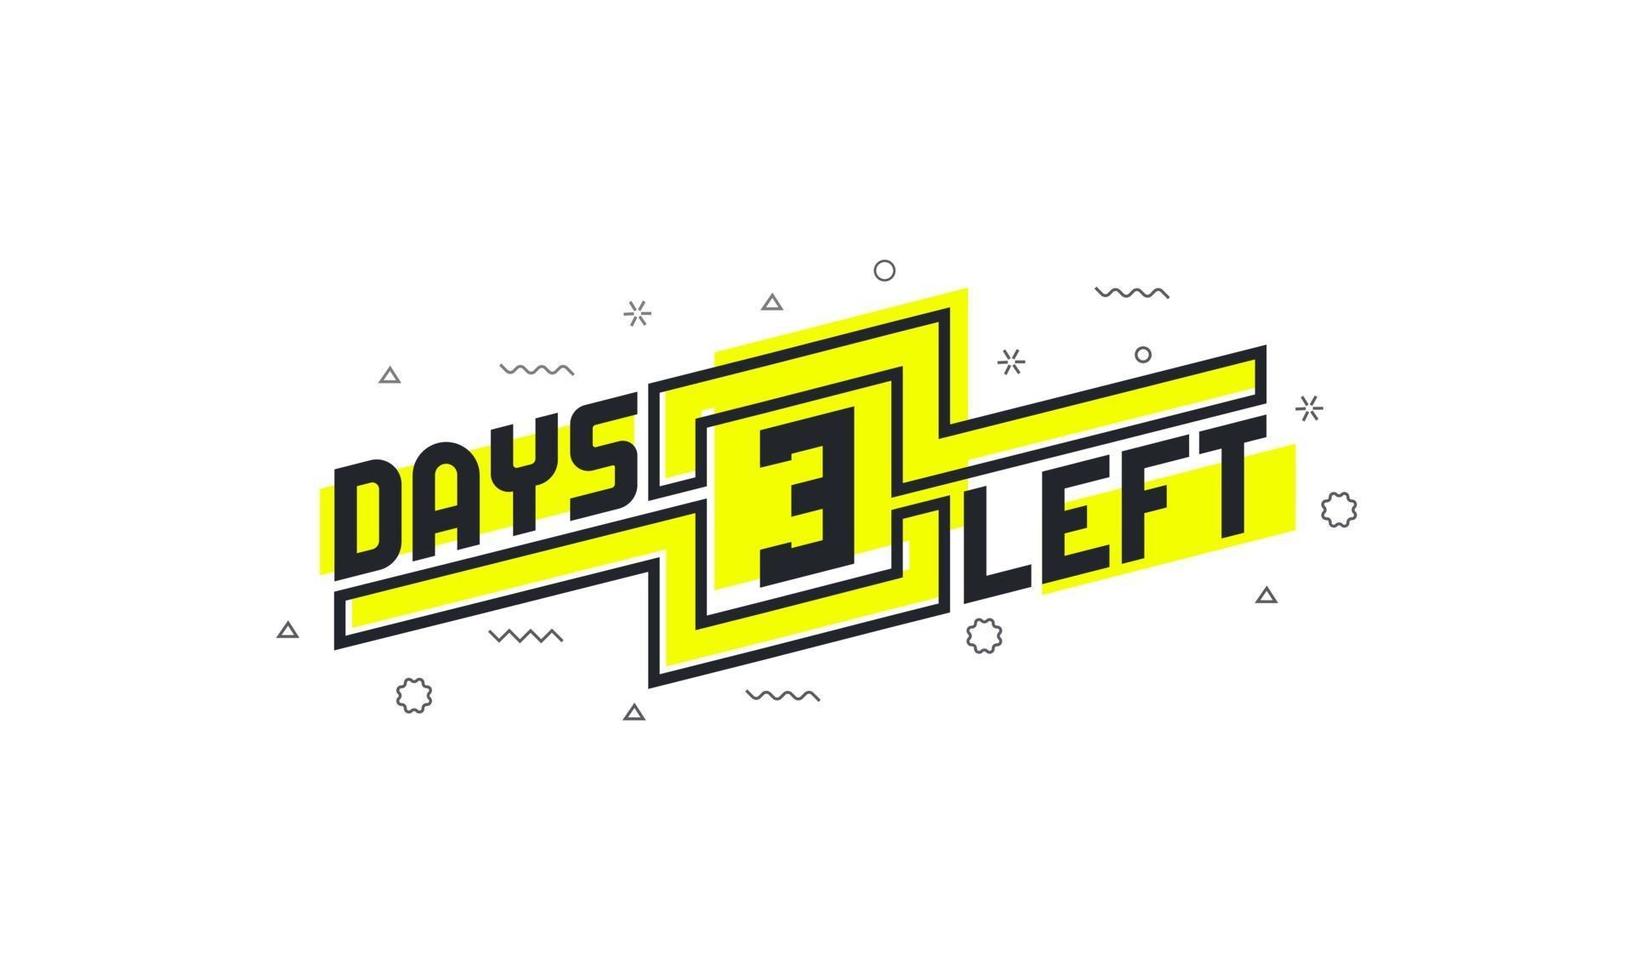 Noch 3 Tage Countdown-Zeichen zum Verkauf oder zur Promotion. vektor